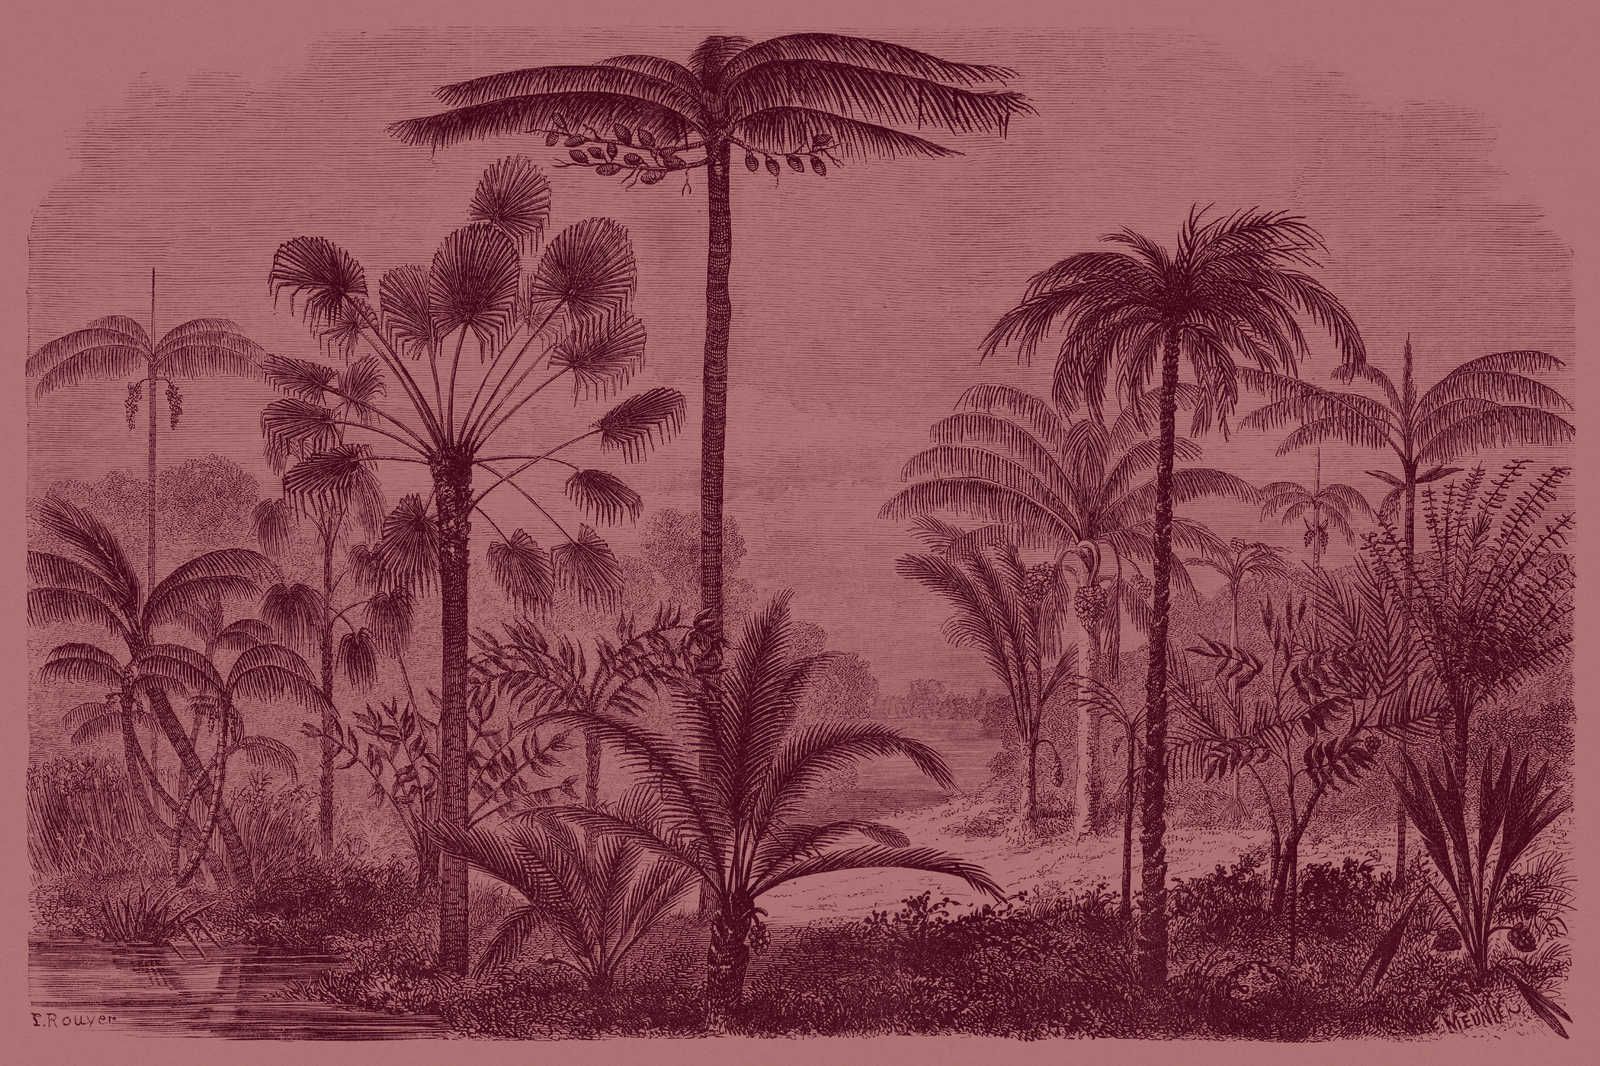             Jurassic 2 - Toile motif jungle gravure sur cuivre - 1,20 m x 0,80 m
        